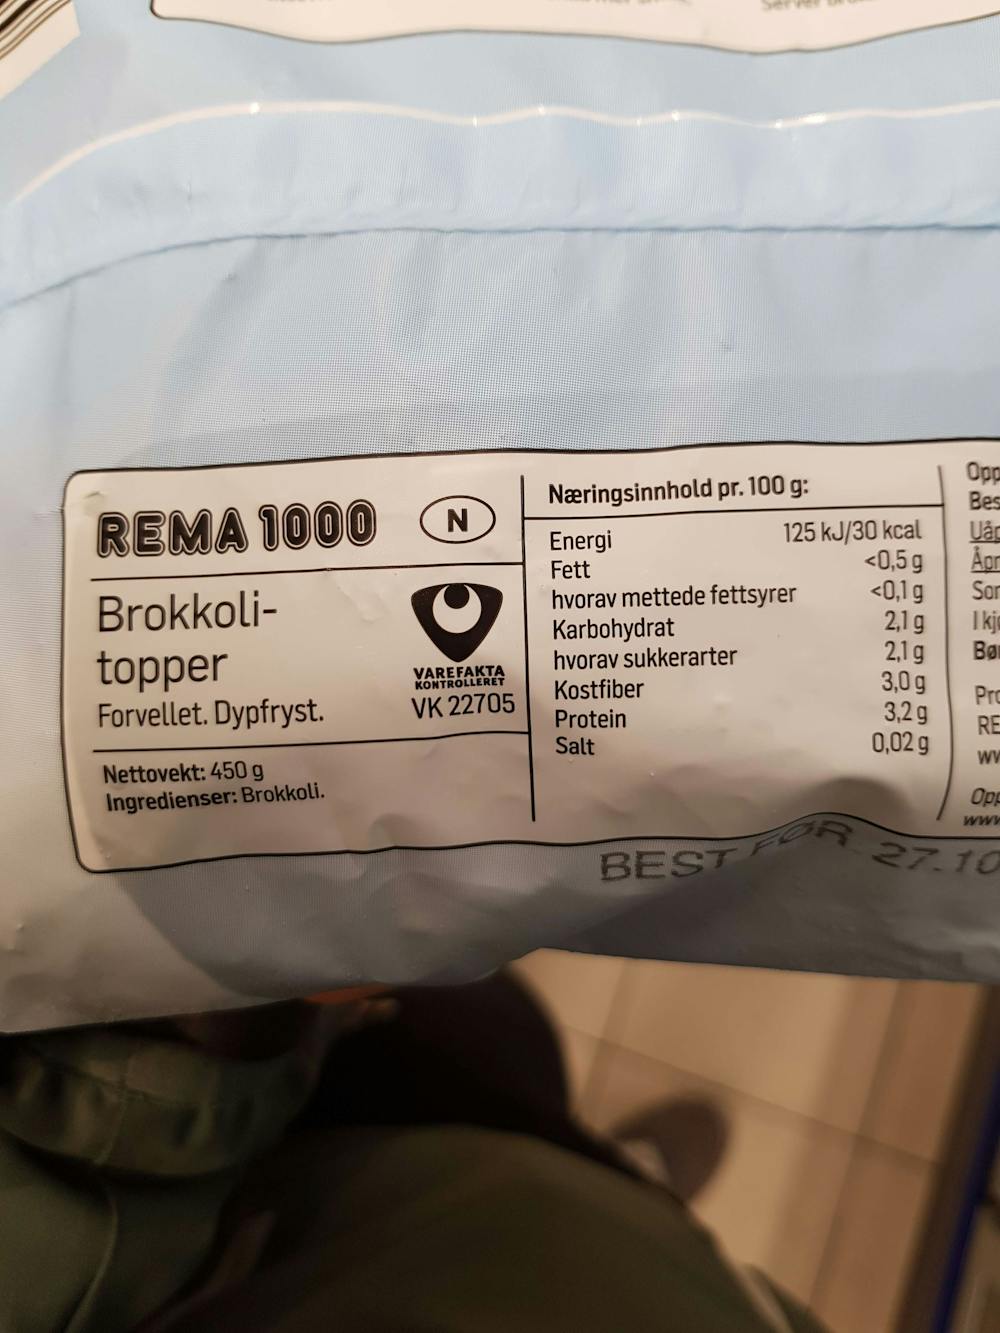 Ingredienslisten til Rema 1000 Brokkolitopper